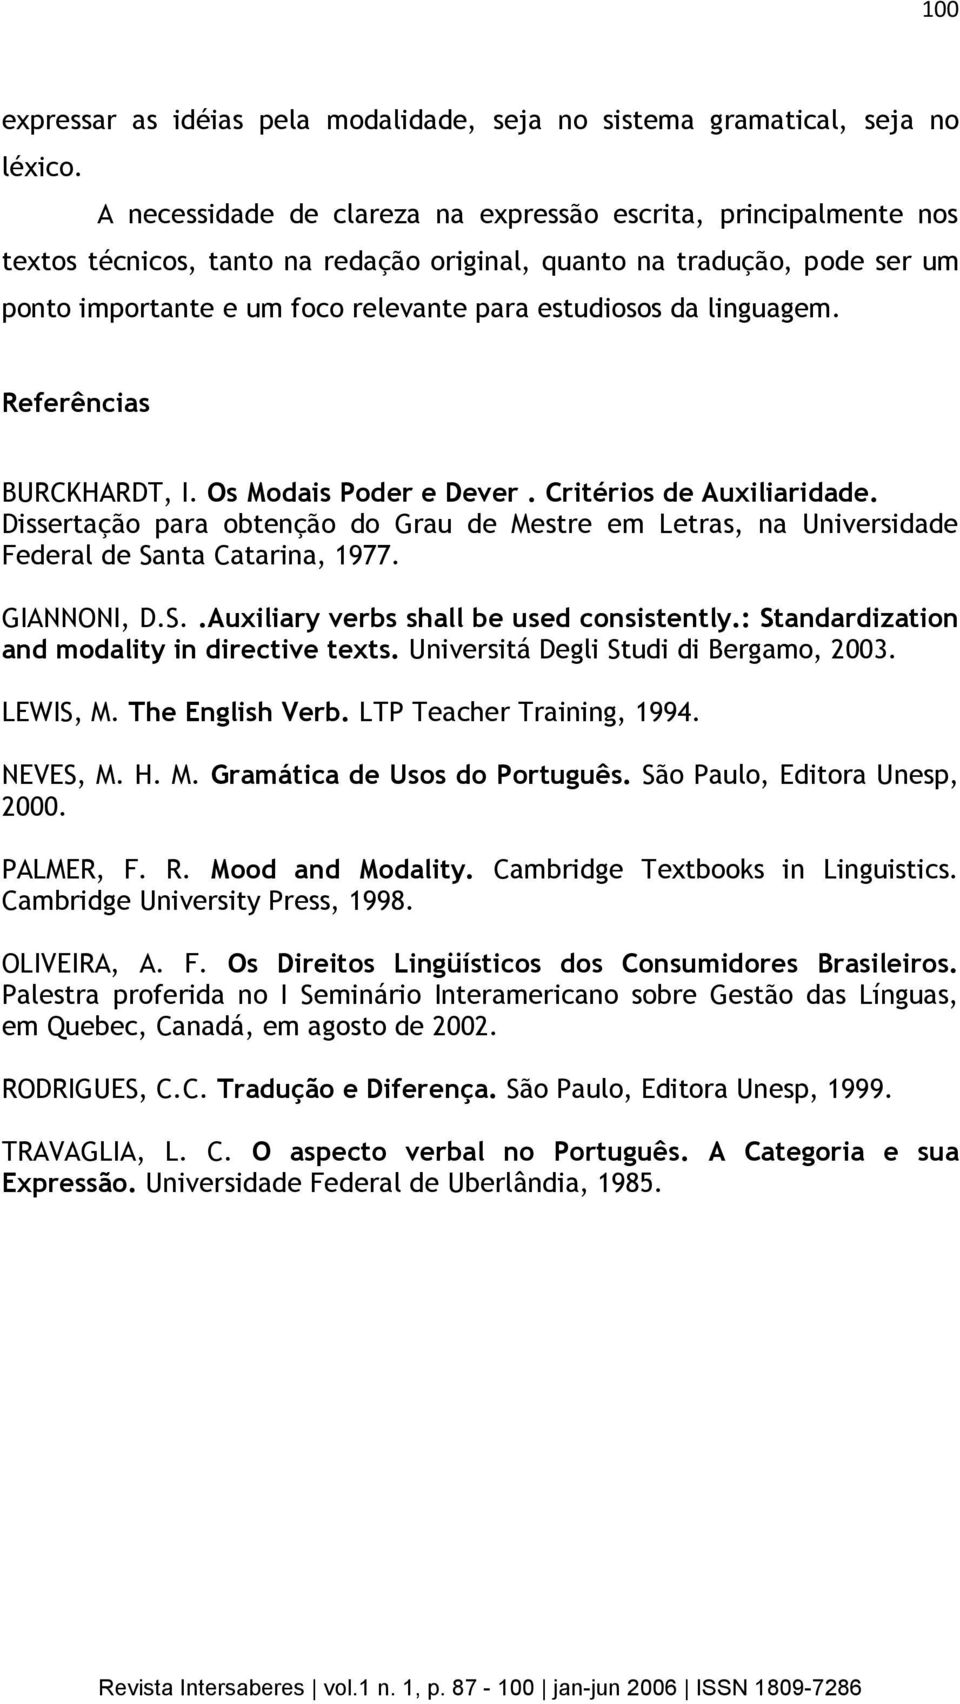 linguagem. Referências BURCKHARDT, I. Os Modais Poder e Dever. Critérios de Auxiliaridade. Dissertação para obtenção do Grau de Mestre em Letras, na Universidade Federal de Santa Catarina, 1977.